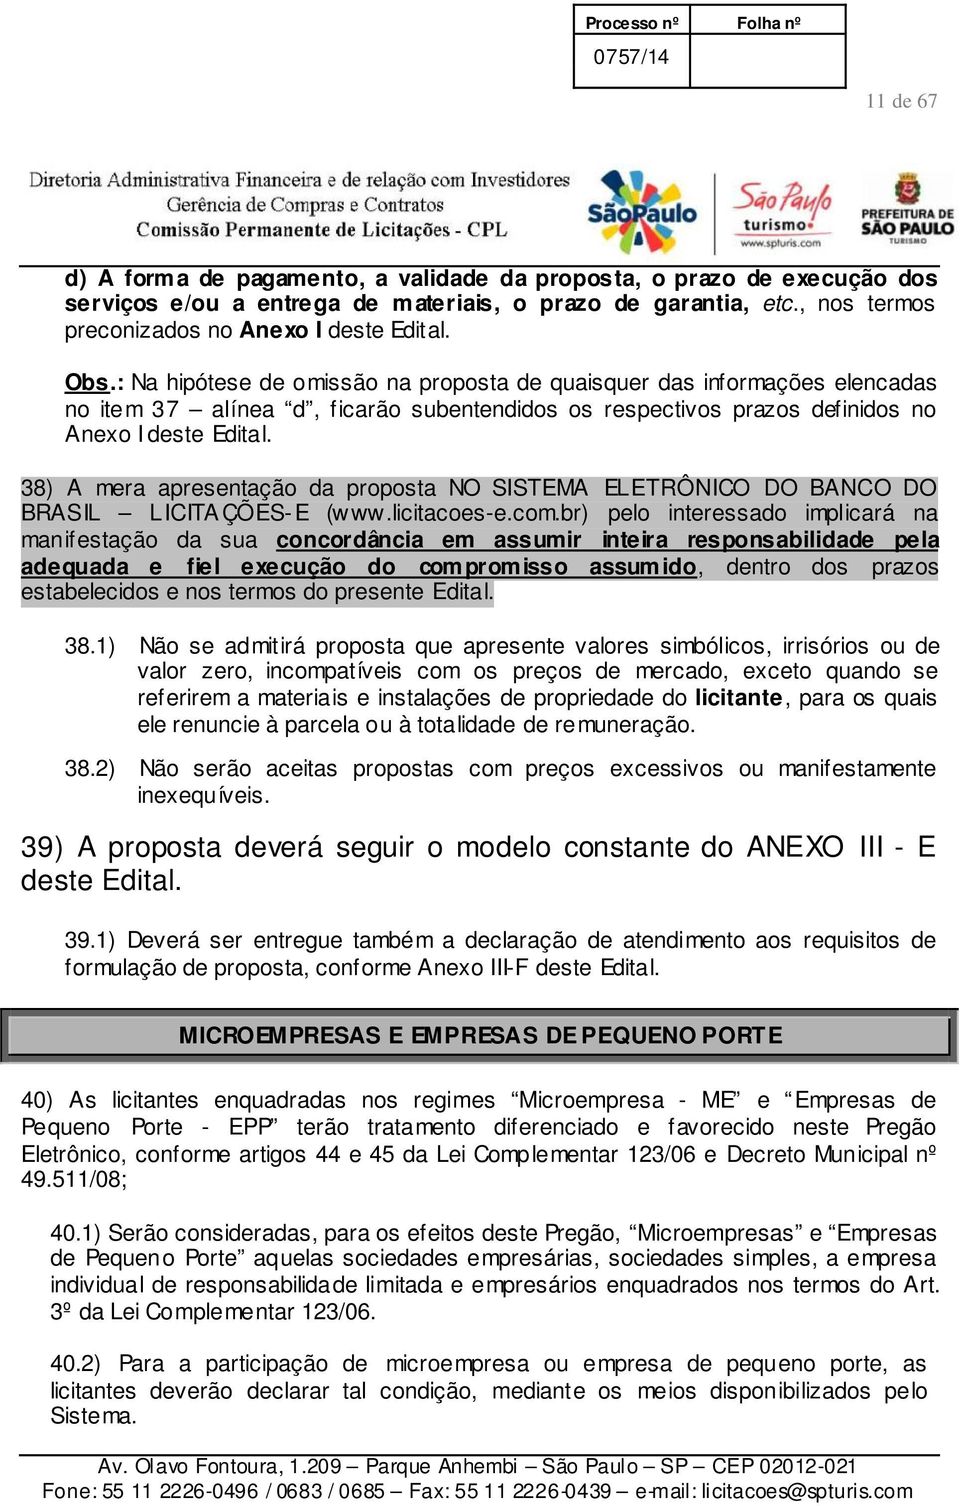 38) A mera apresentação da proposta NO SISTEMA ELETRÔNICO DO BANCO DO BRASIL LICITA ÇÕES-E (www.licitacoes-e.com.